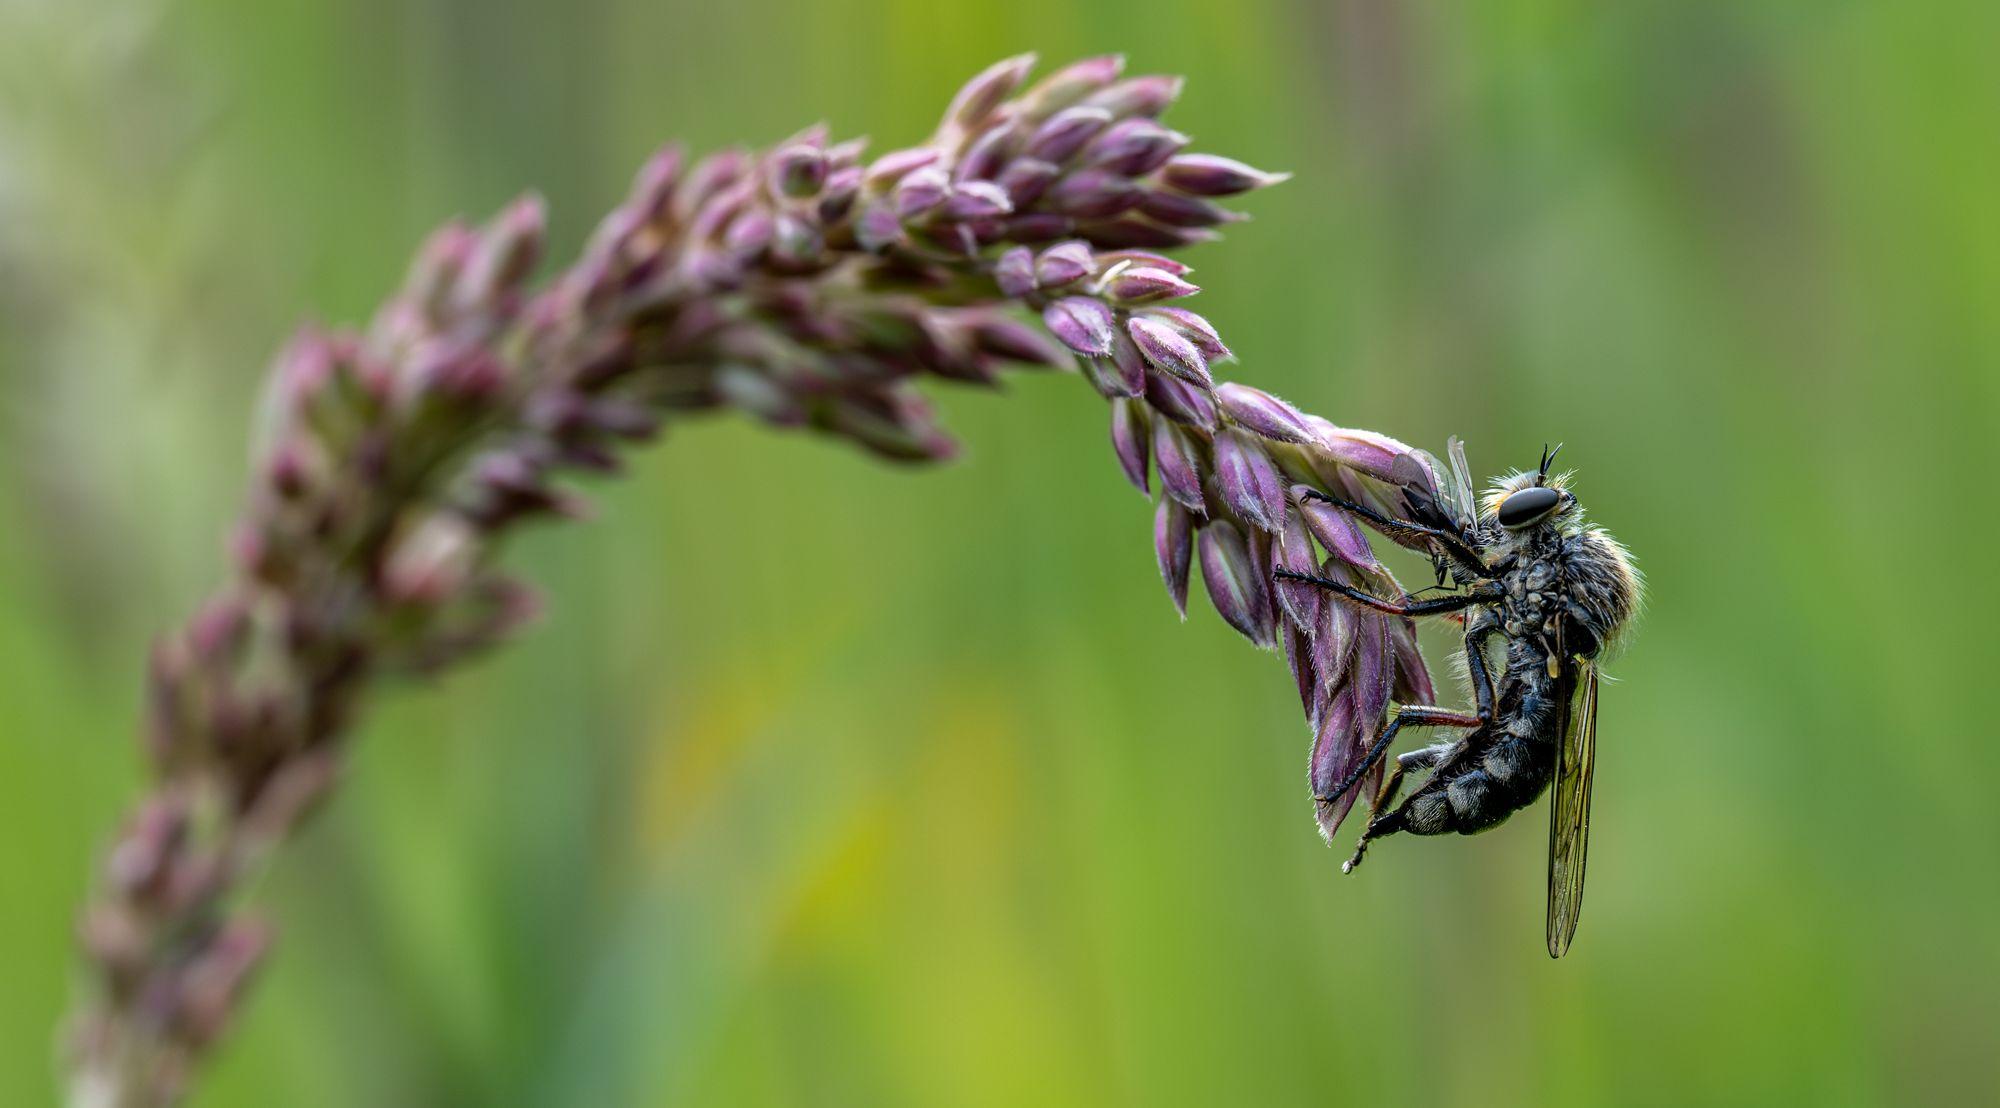 Böcek fotoğrafları yarışmasının kazananı guguklu arılar oldu - Son Dakika Yaşam Haberleri | Cumhuriyet